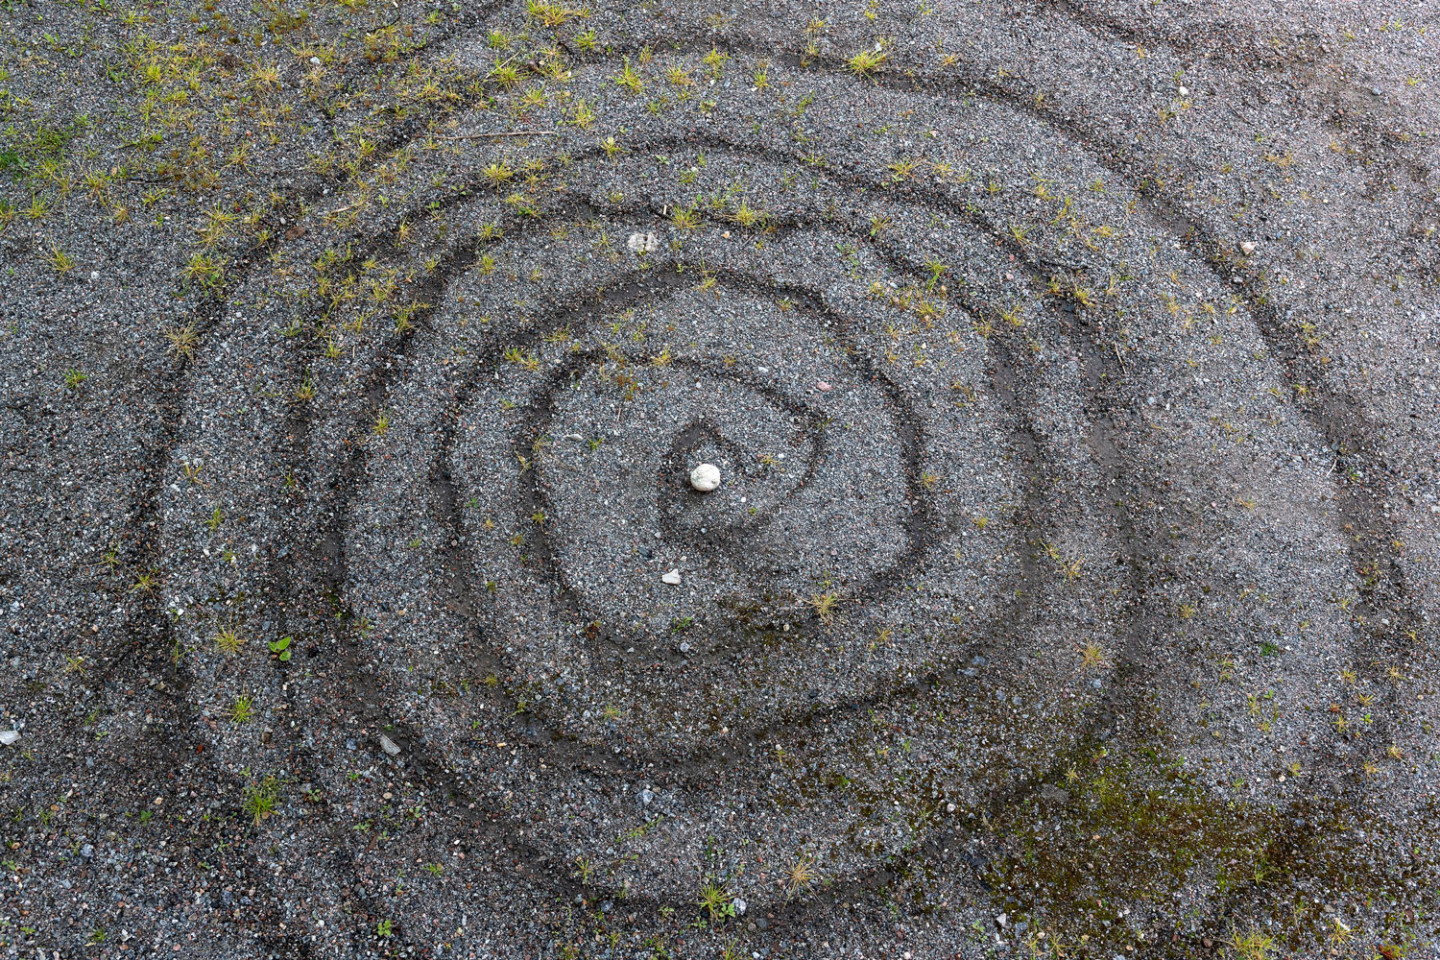 Spiral i vatten på grus med en vit sten i mitten.